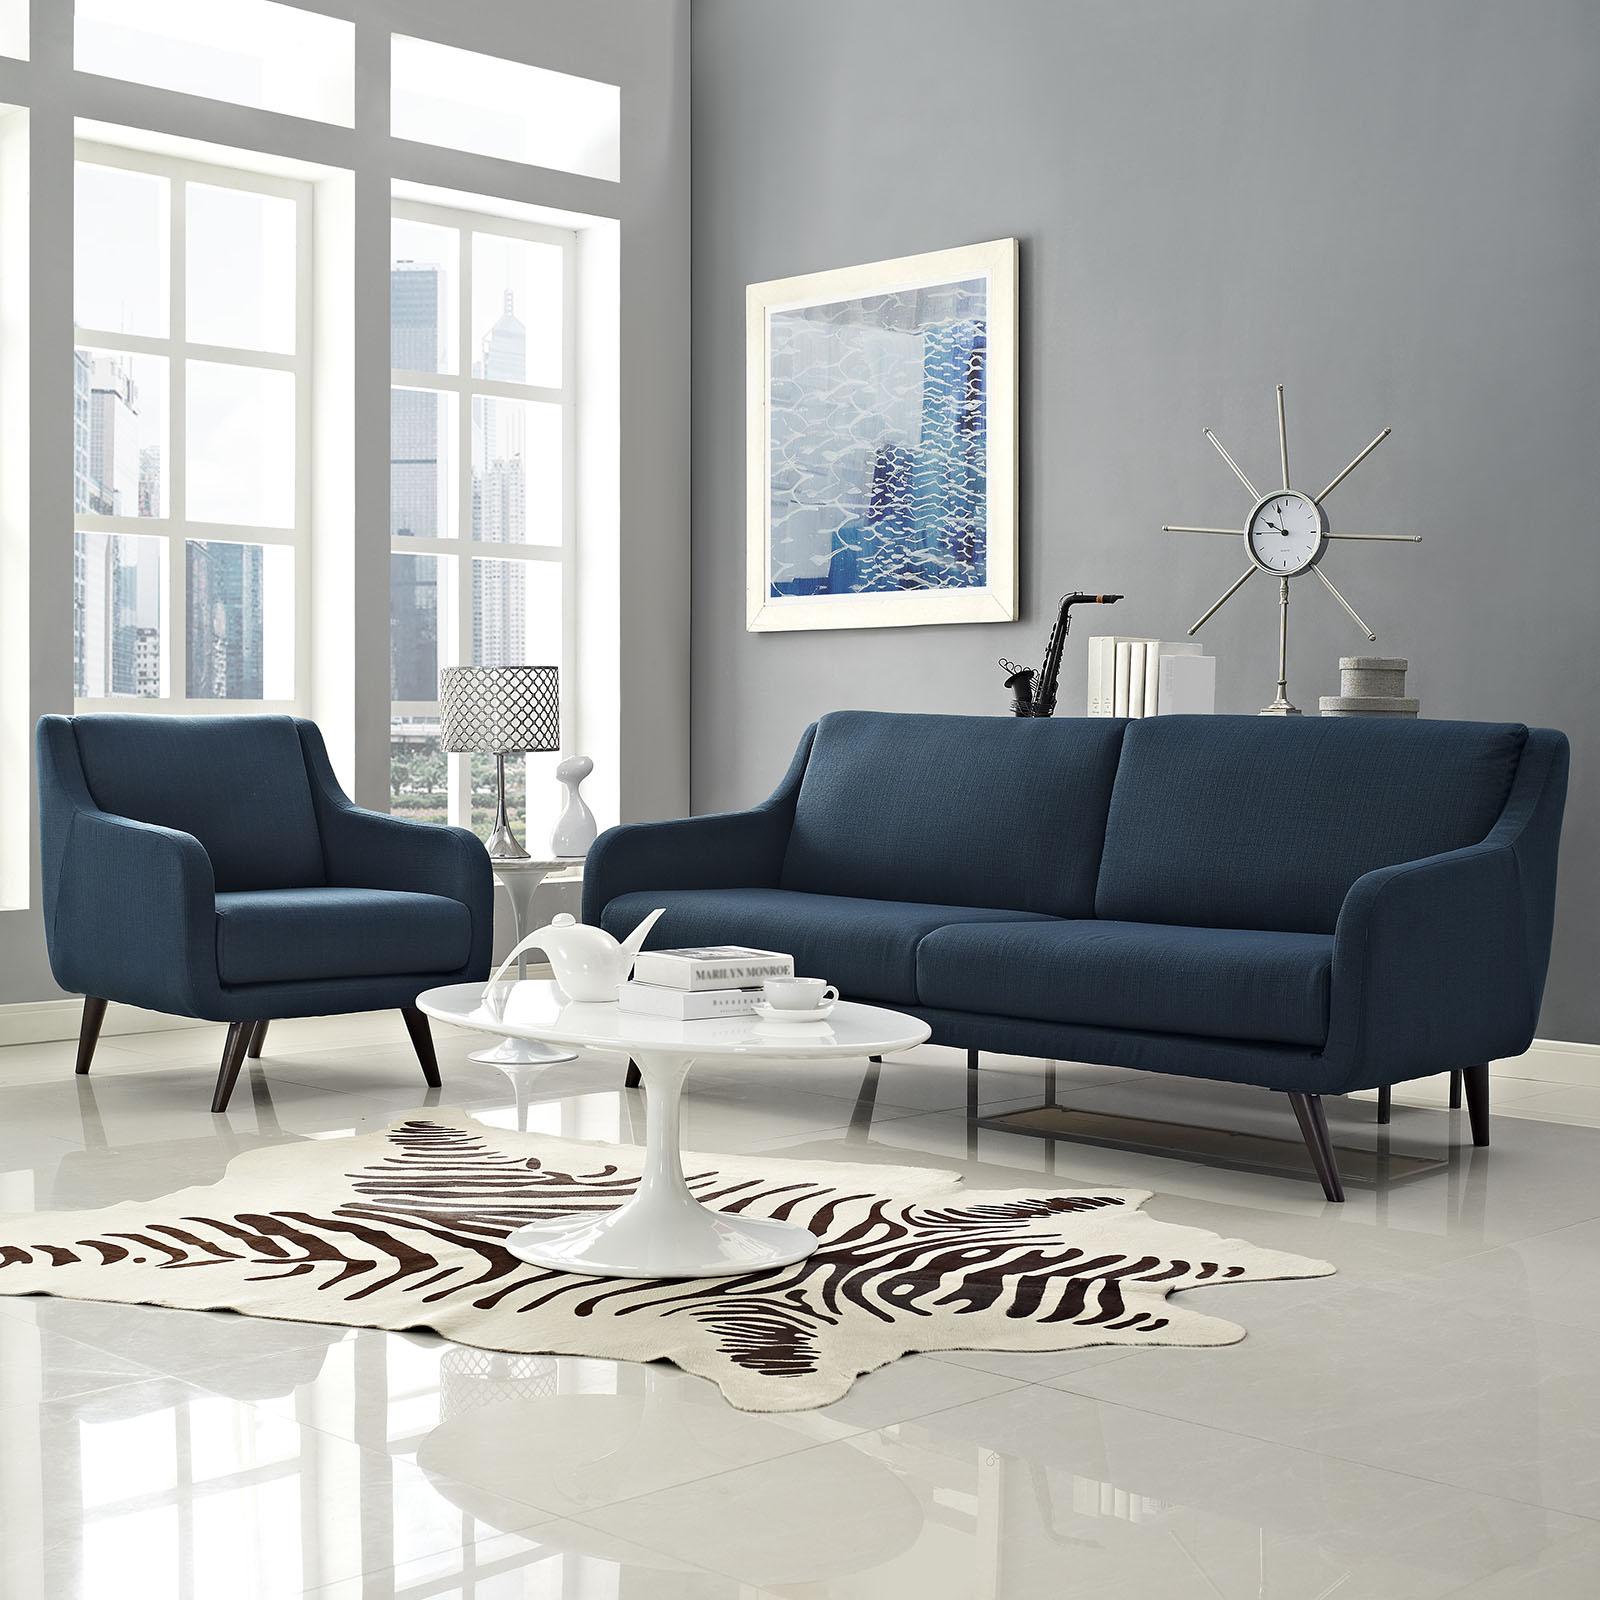 Modway Furniture Modern Verve Living Room Set Set of 2 - EEI-2447